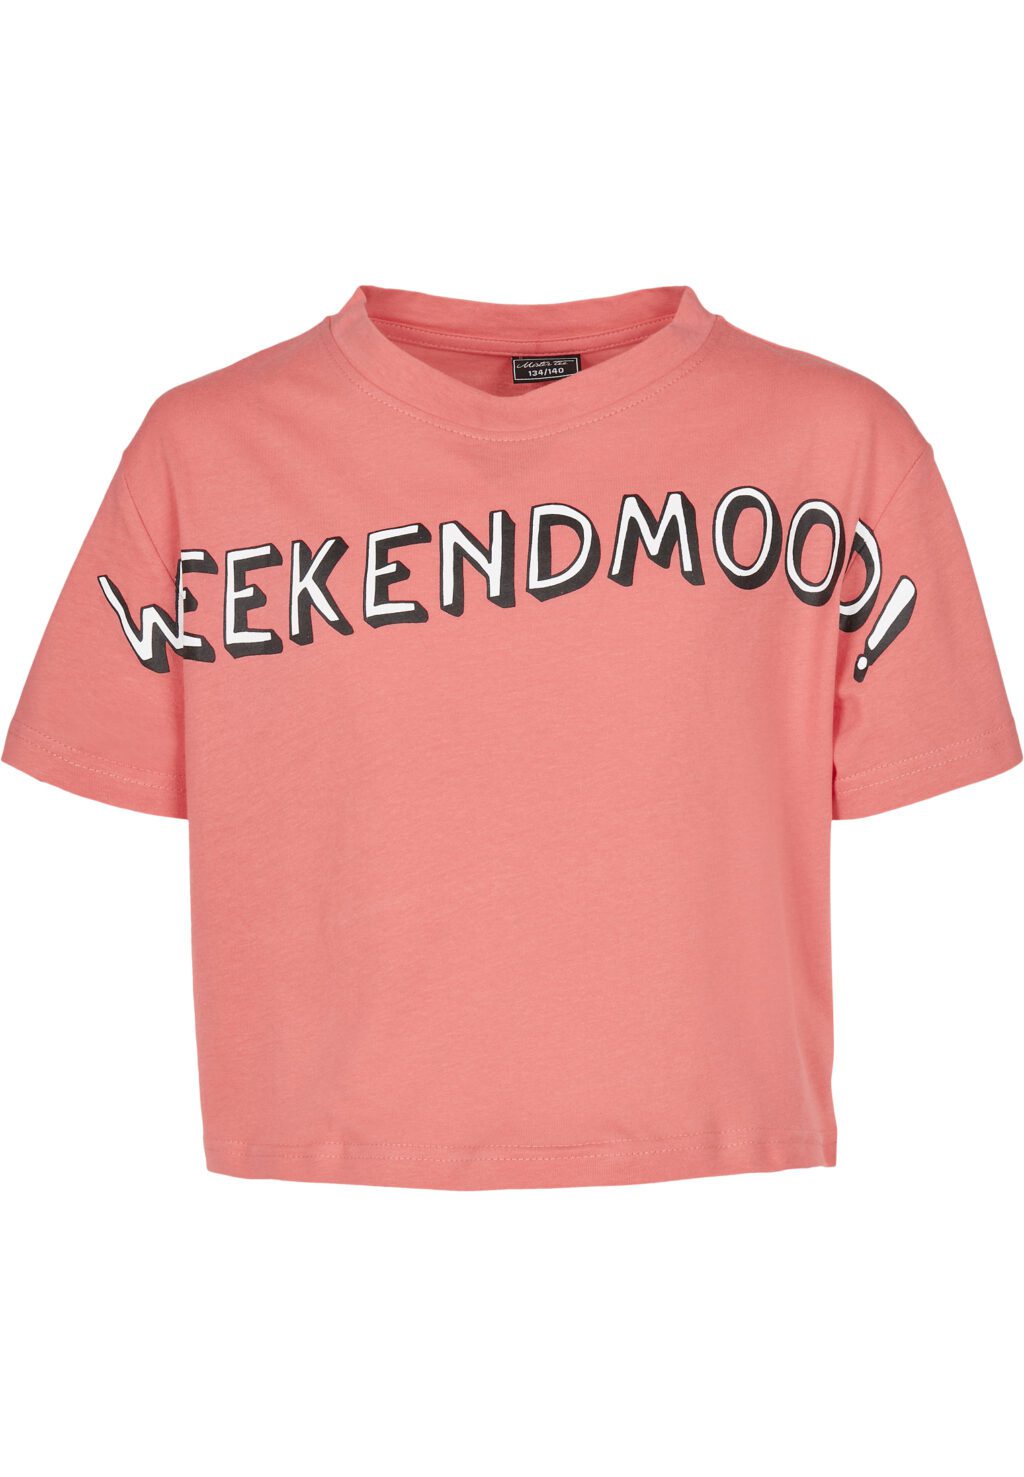 Kids Weekend Mood Tee pink MTK083